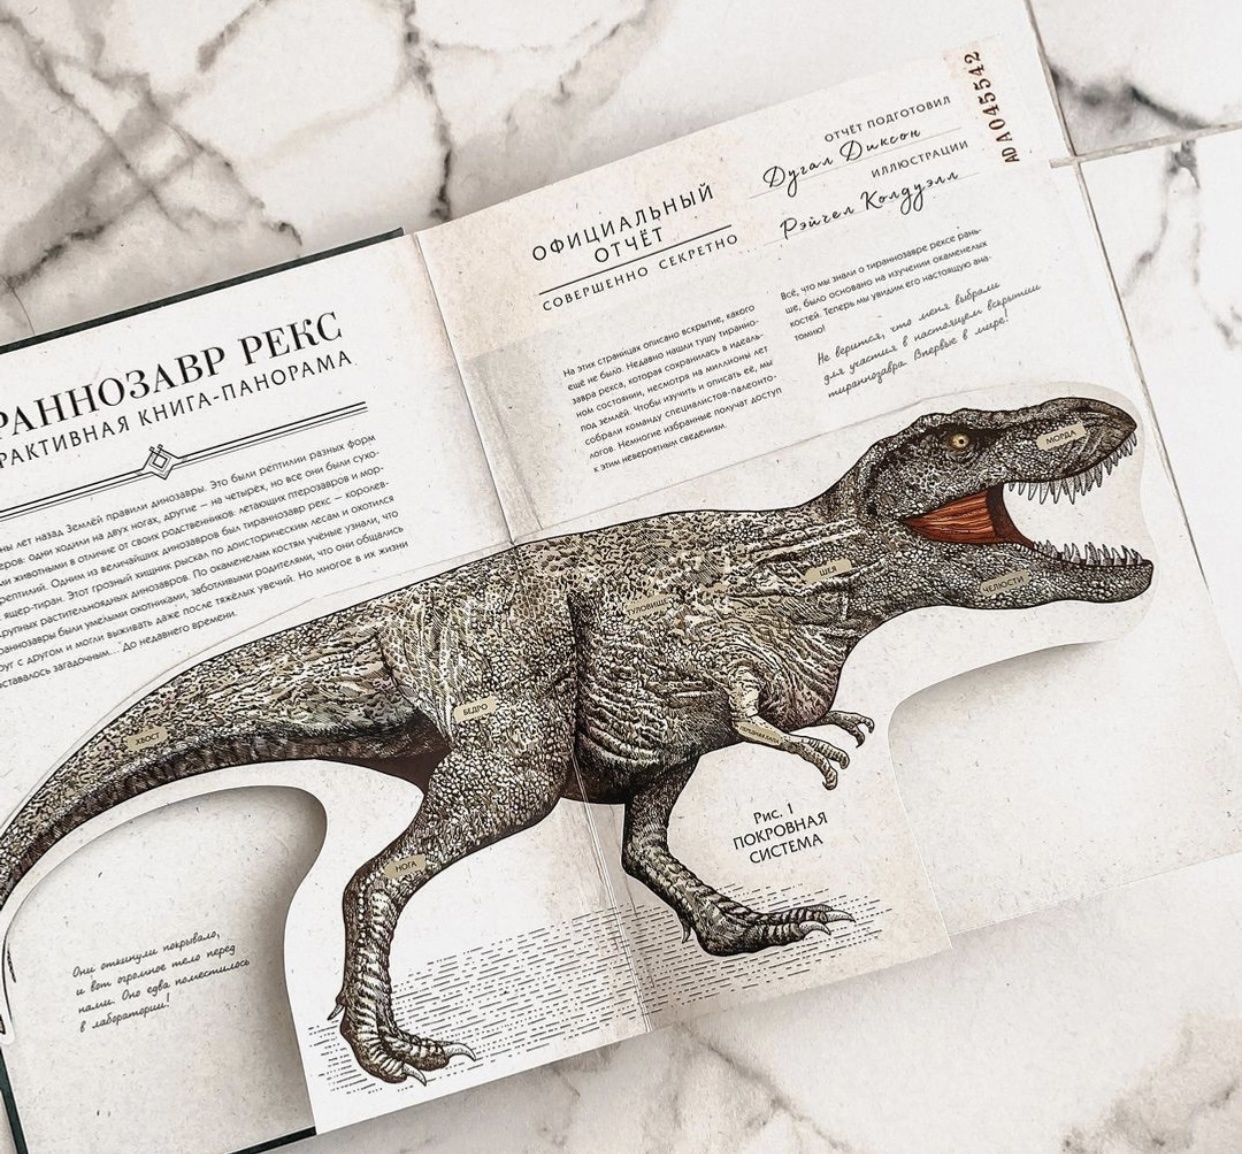 Тираннозавр рекс. Интерактивная книга-панорама. Автор — Дугал Диксон. 